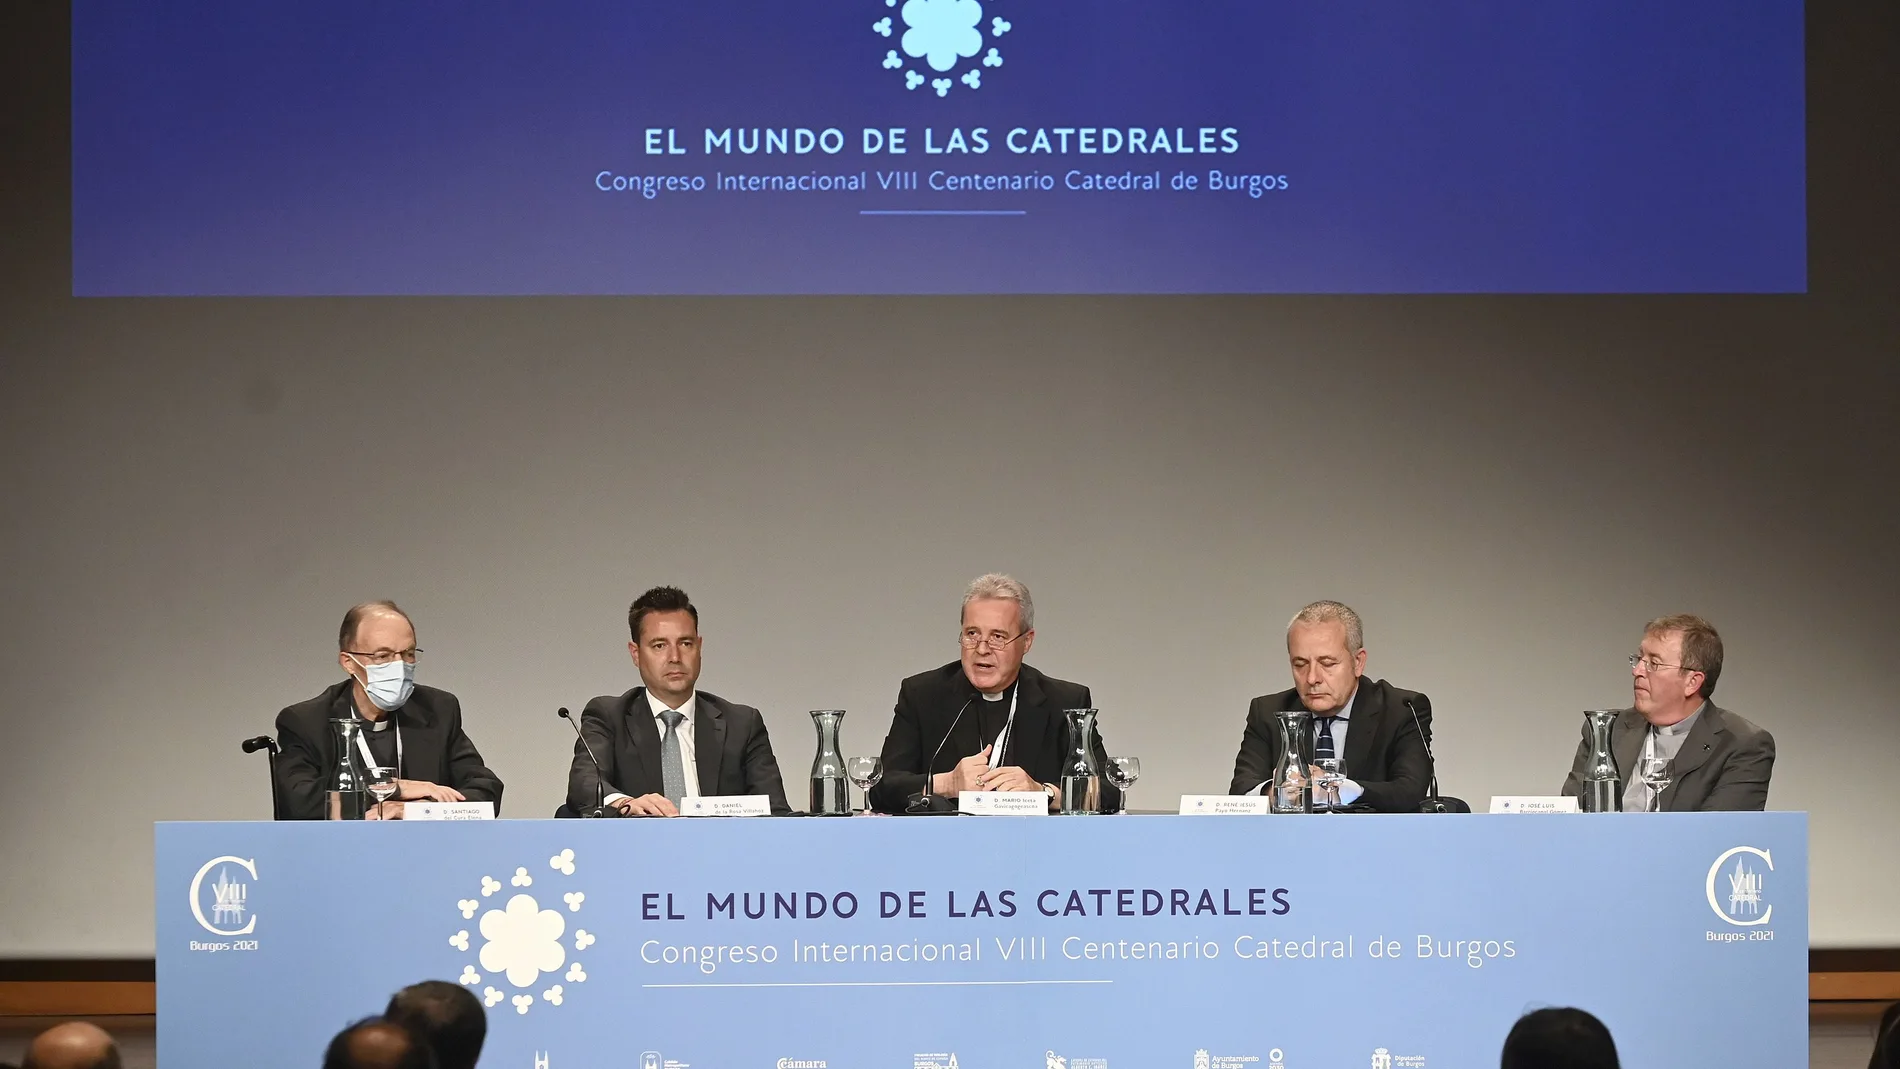 Inauguración del Congreso Internacional VIII Centenario Catedral de Burgos ''''El mundo de las catedrales''''.